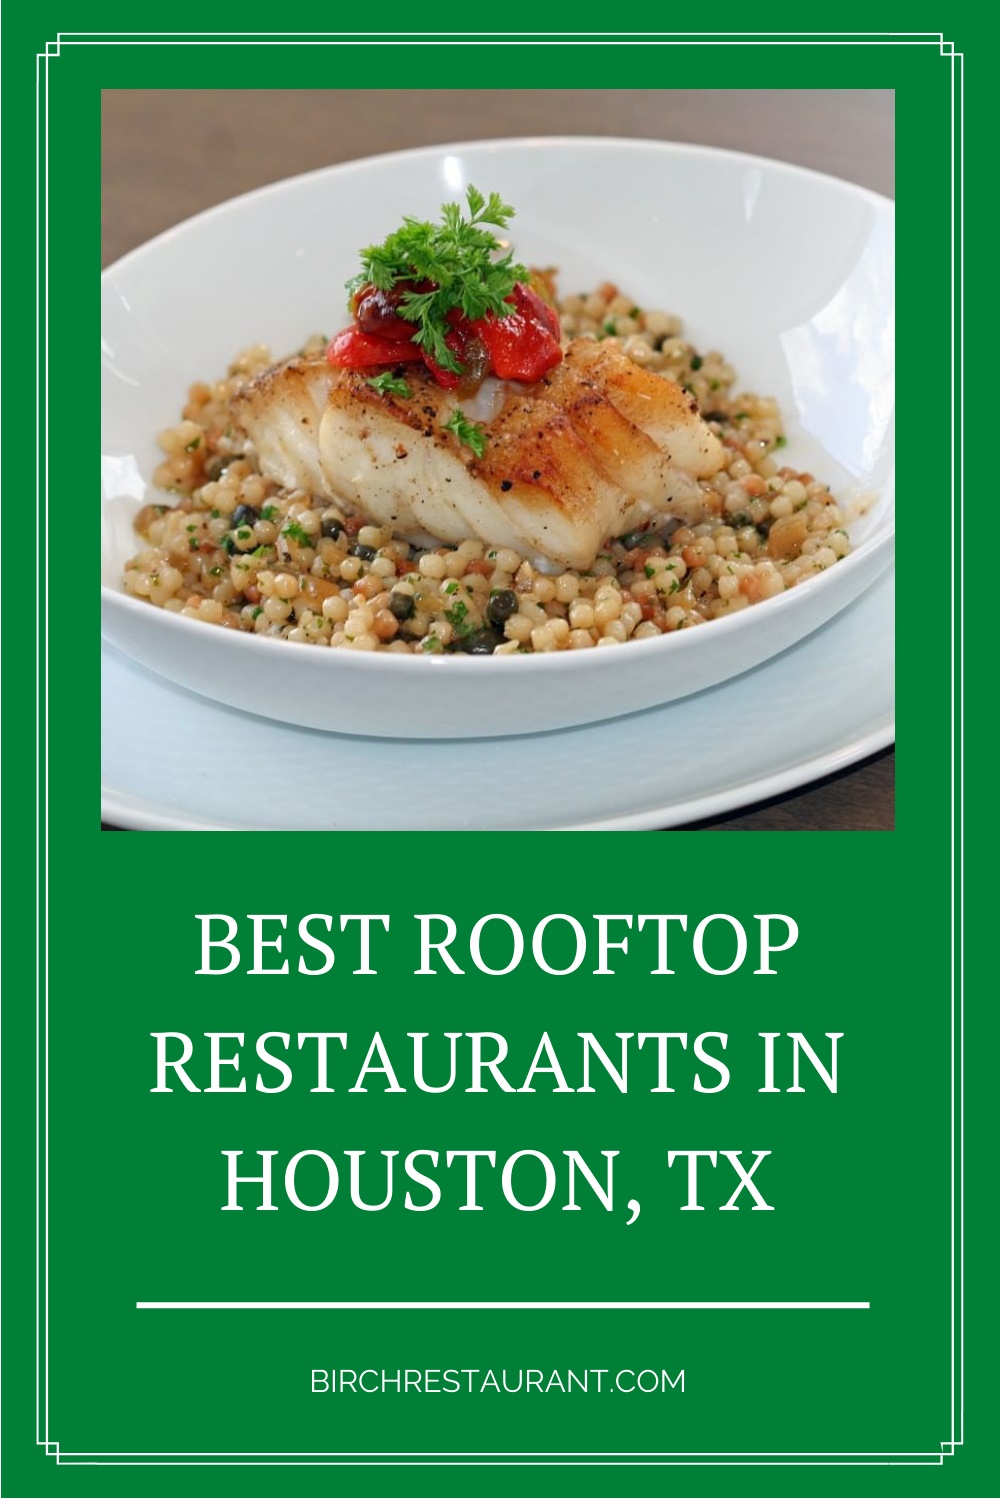 Rooftop Restaurants in Houston, TX